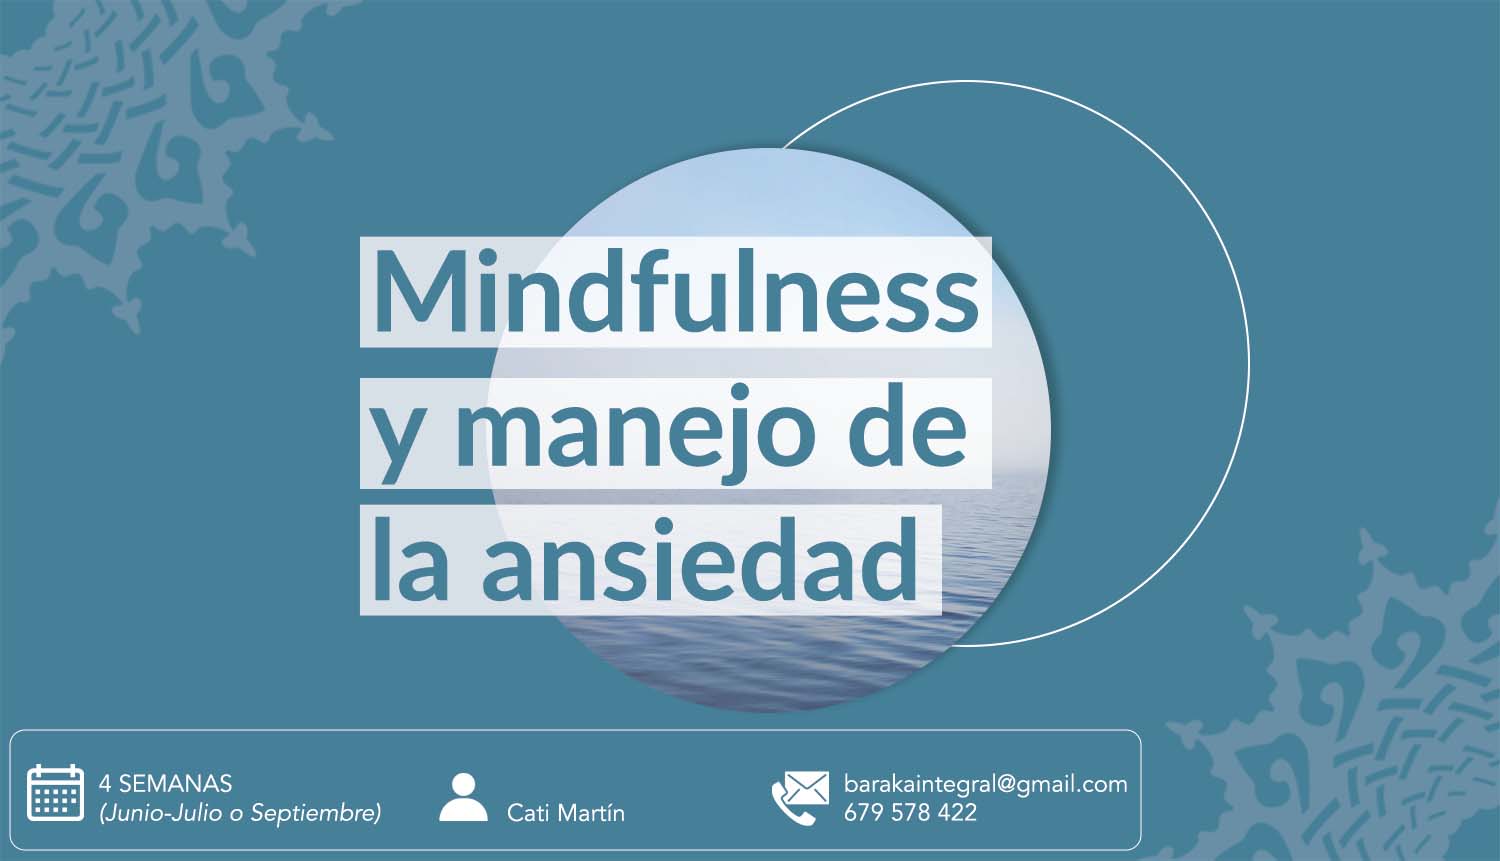 Mindfulness y el manejo de la ansiedad – 4 semanas